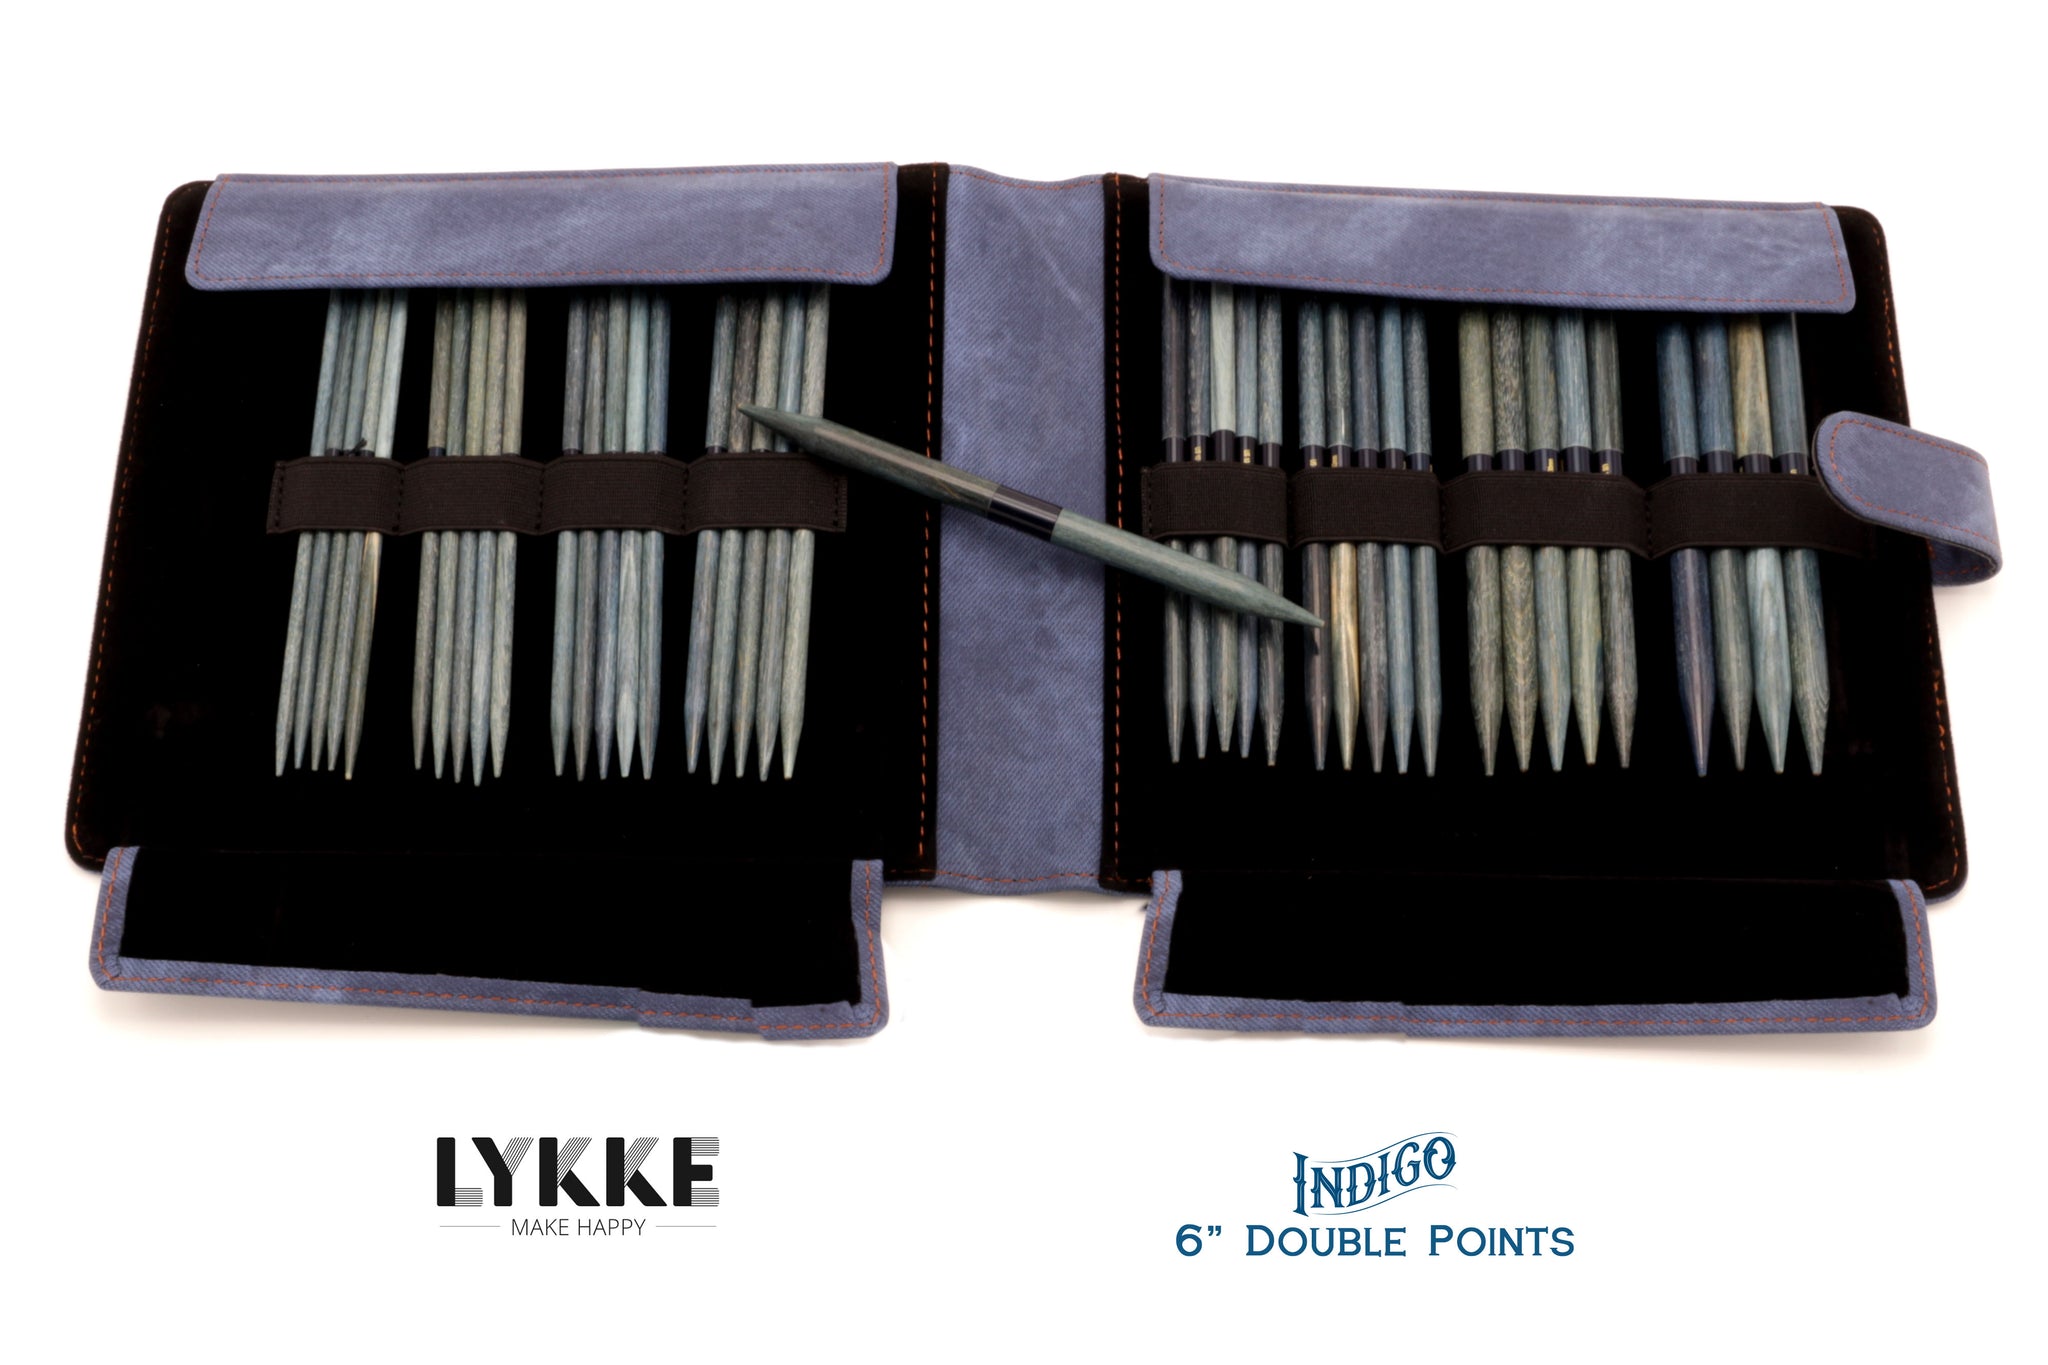 LYKKE - Indigo 6 Double-Pointed Knitting Needle Set US 6-13 - Yarn Loop